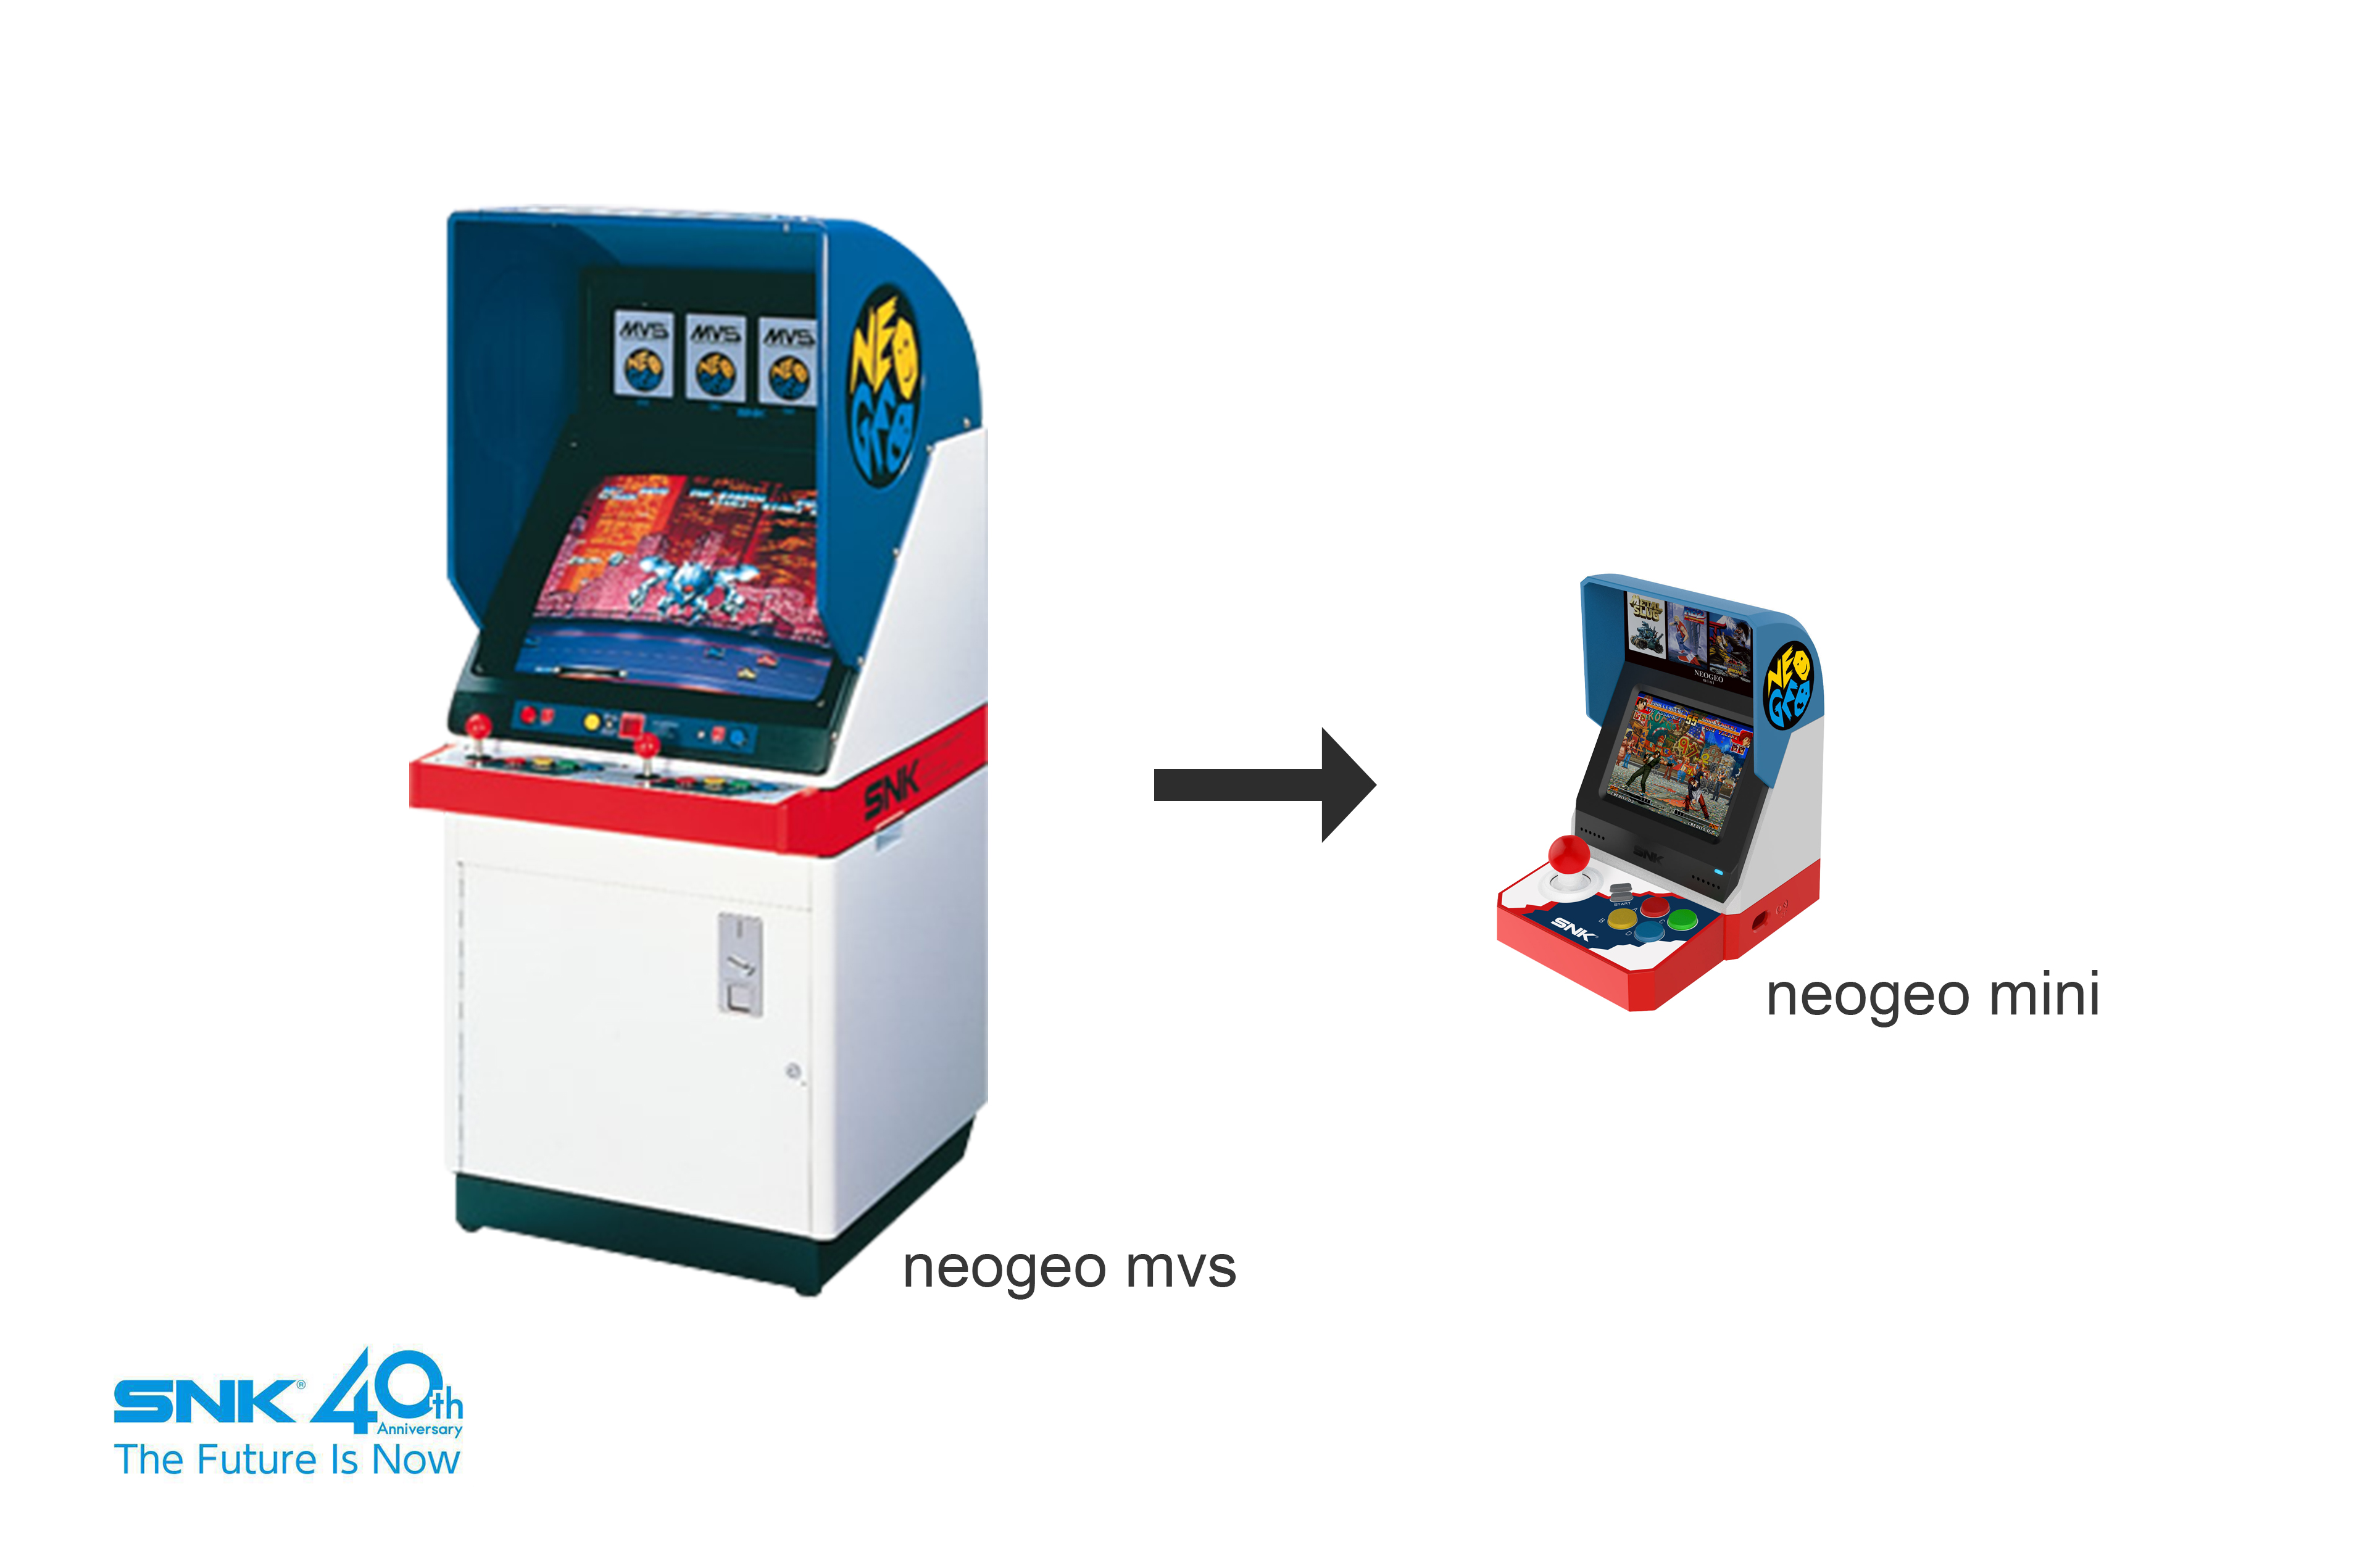 「NEOGEO mini」正式発表。筐体風ゲーム機でテレビにつなげず遊べる、ディスプレイとアケ風コントローラーが搭載